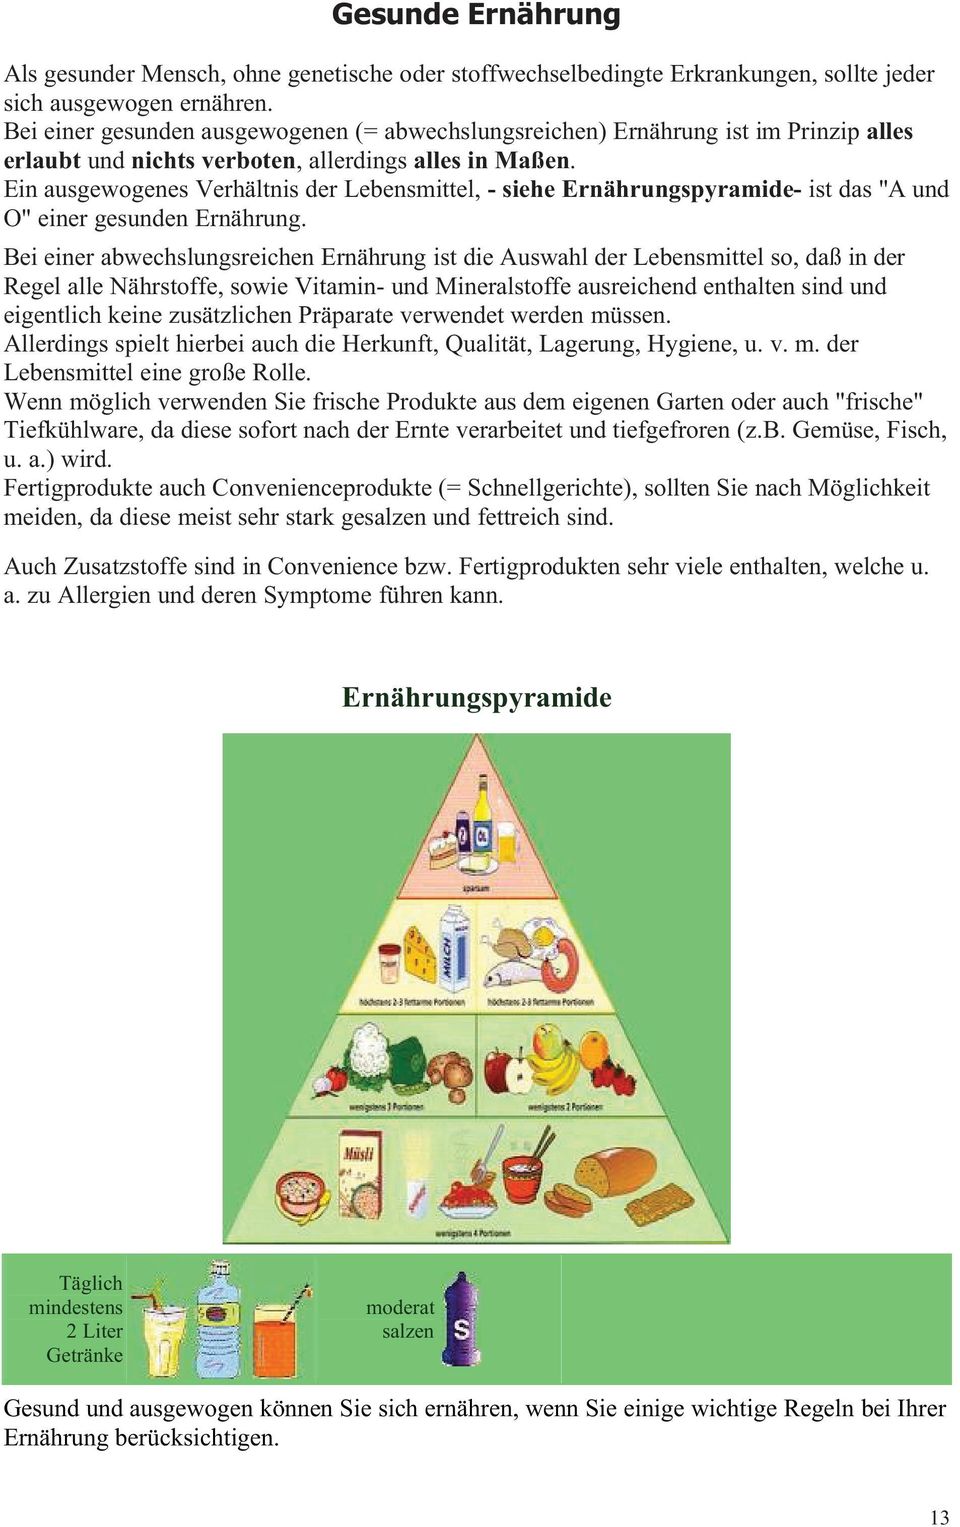 Ein ausgewogenes Verhältnis der Lebensmittel,- siehe Ernährungspyramide- ist das"a und O" einer gesunden Ernährung.